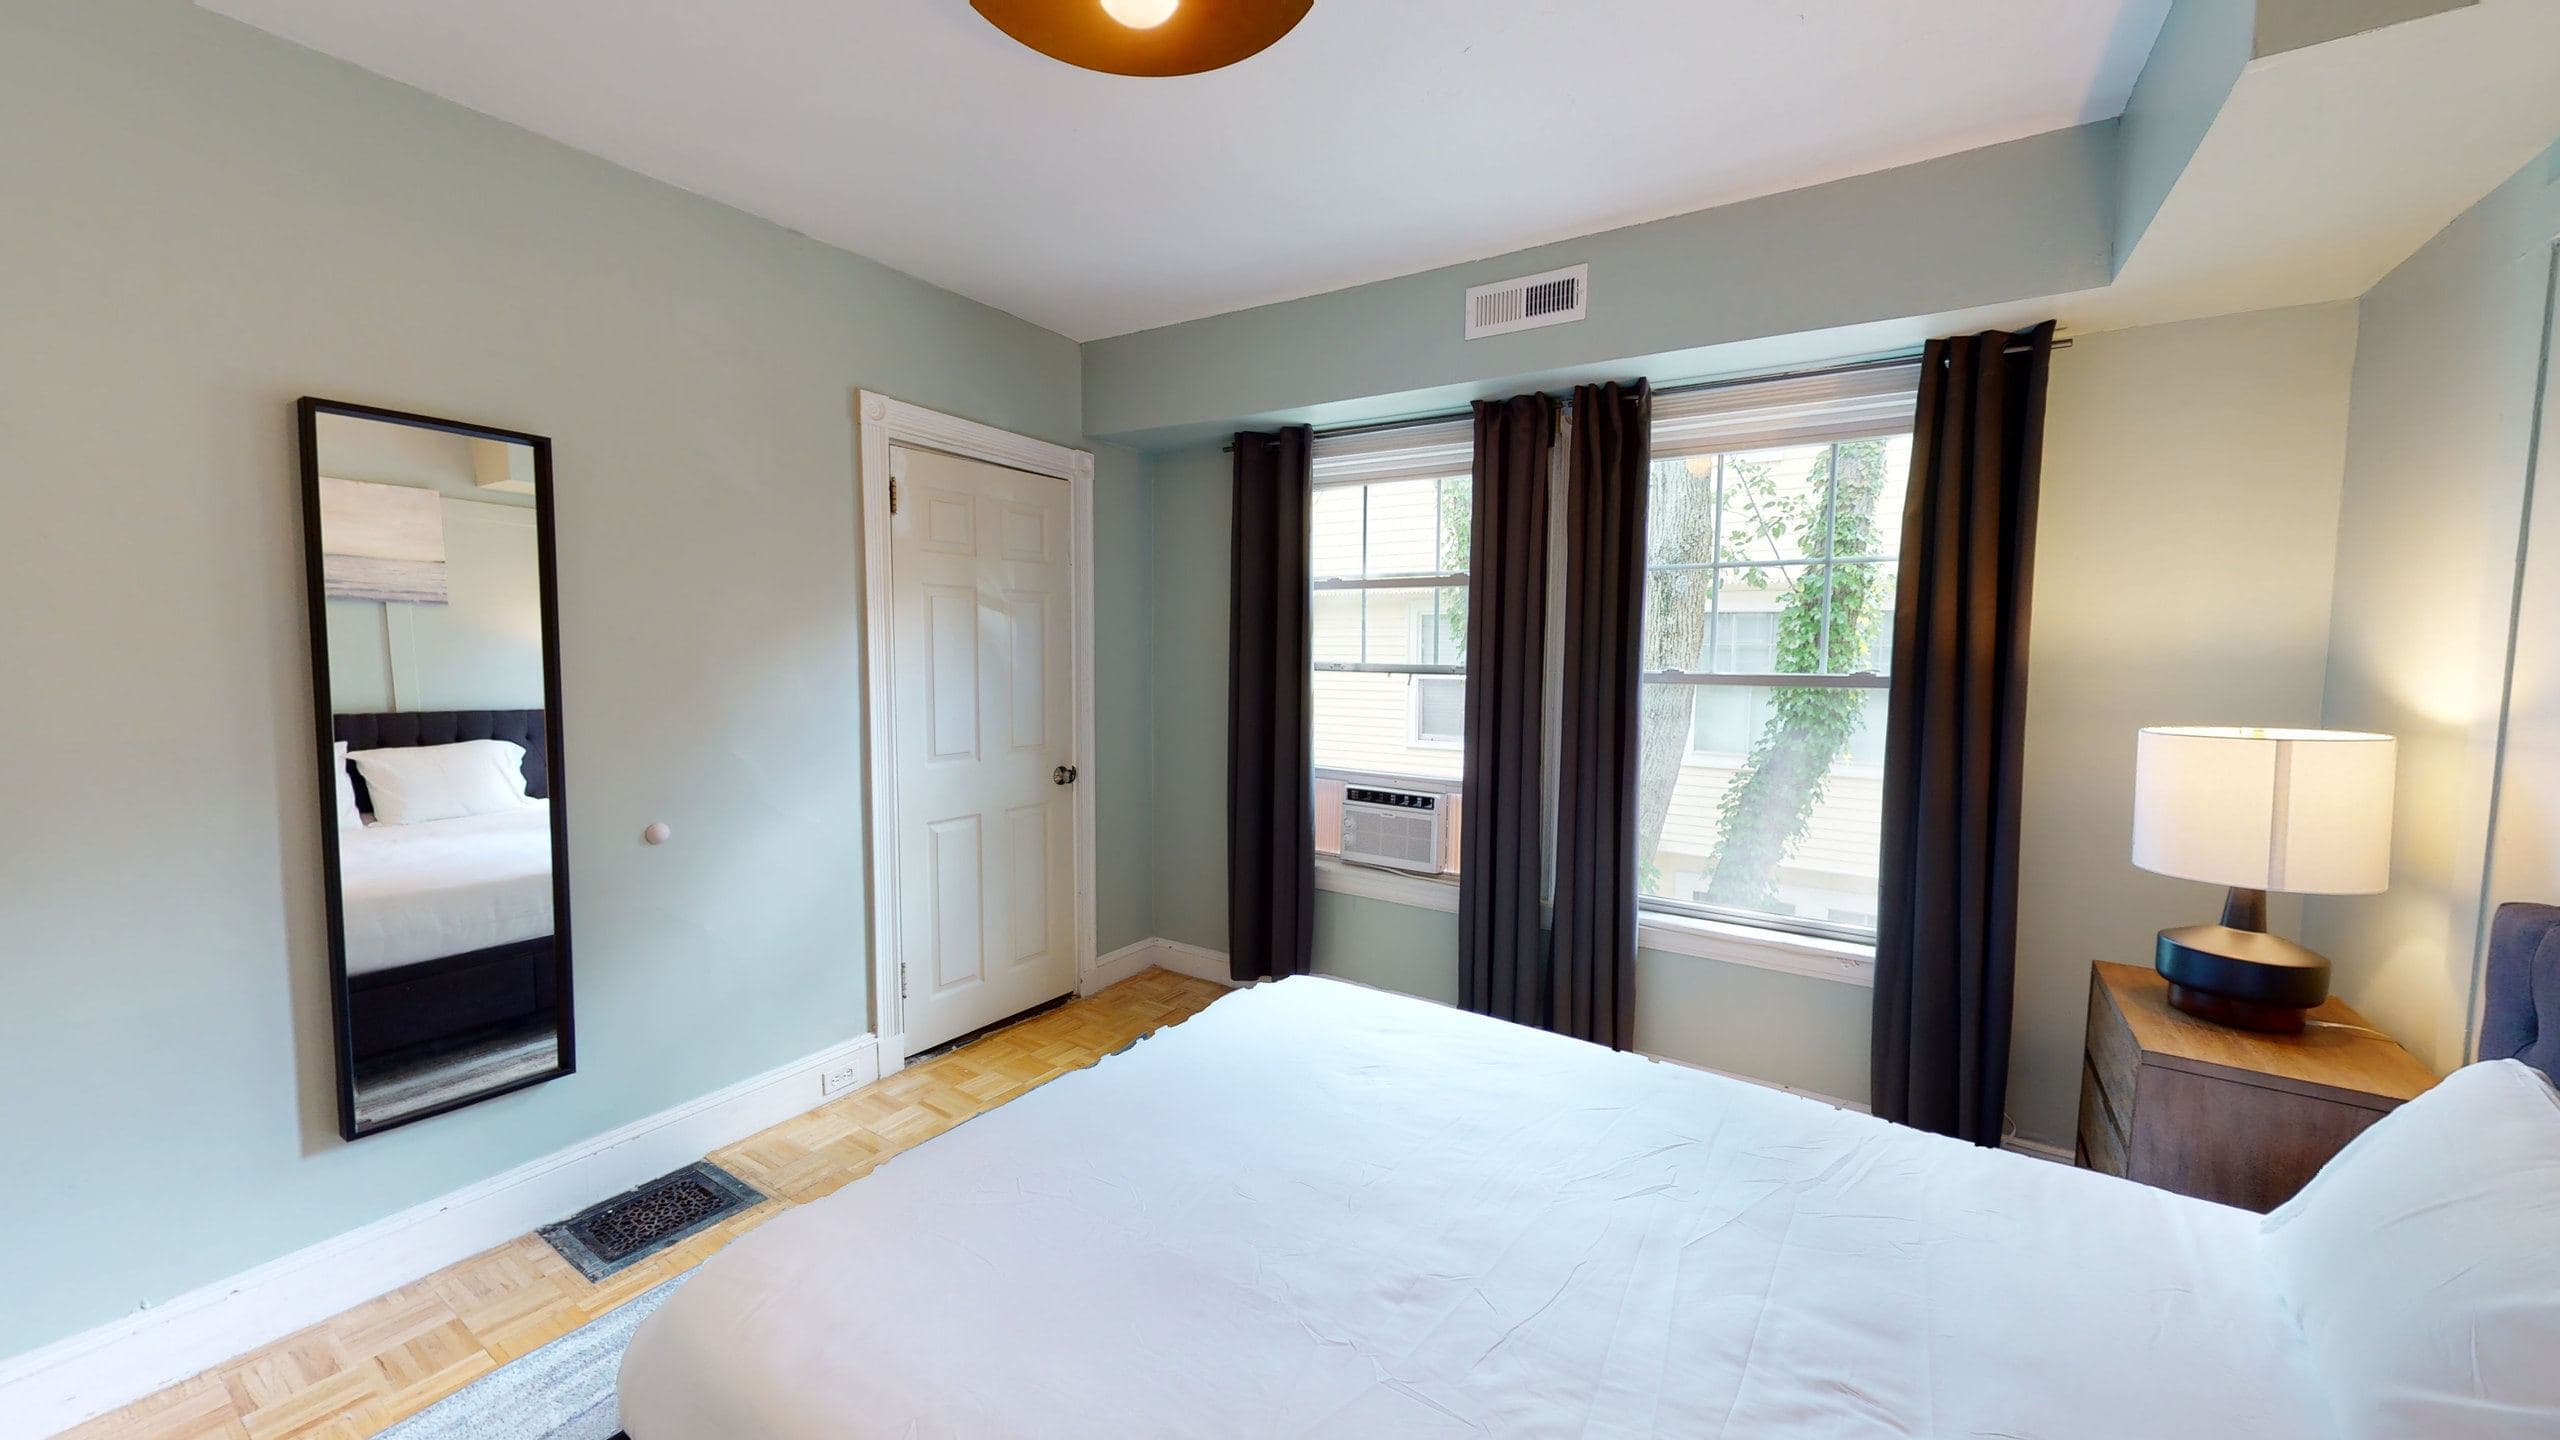 Photo 7 of #1165: Queen Bedroom C at June Homes